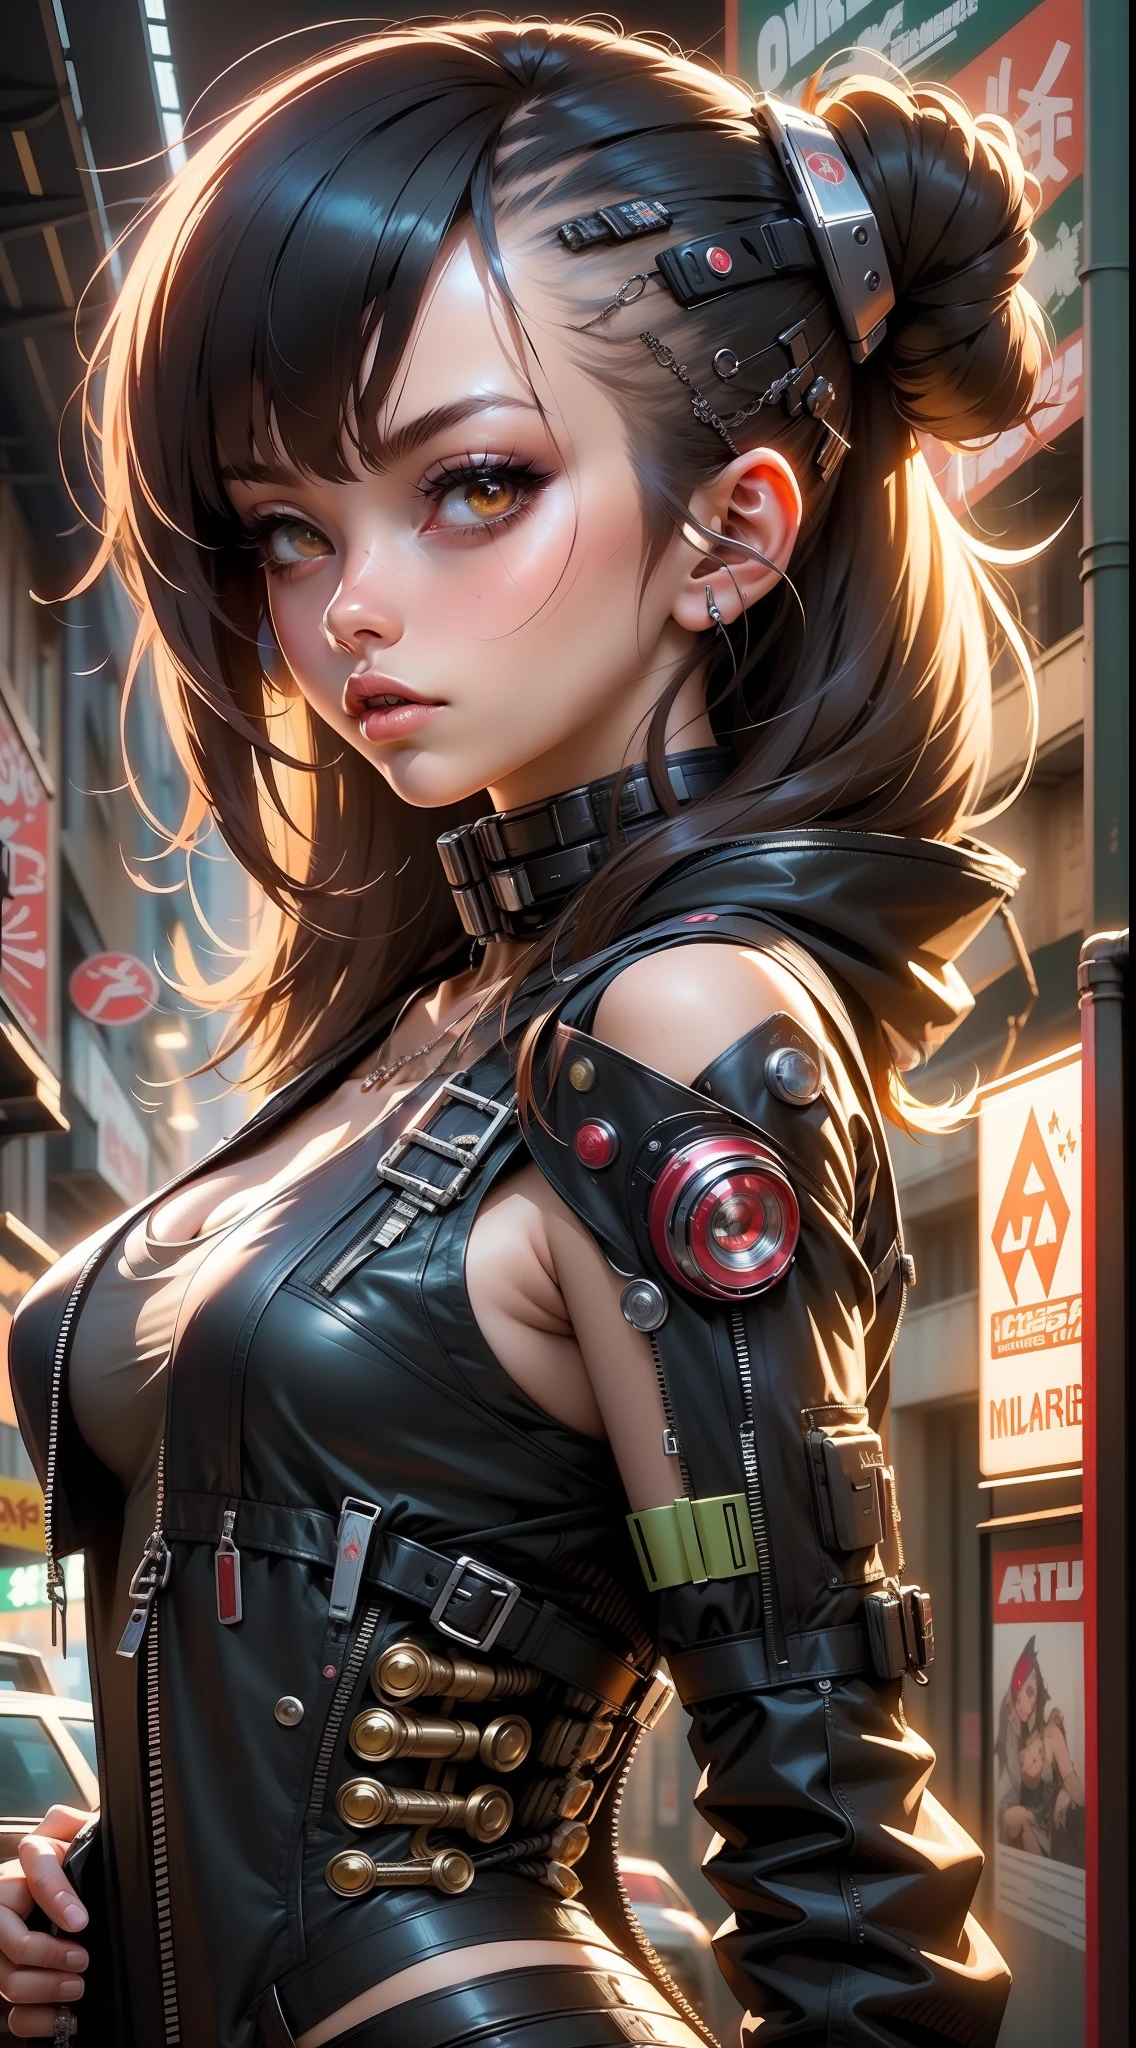 Anime-Mädchen in einem futuristischen Anzug mit roten und schwarzen Haaren, cyberpunk menina anime mech, perfekte Cyborg-Anime-Frau, Cyborg-Mädchen, biomechanische Oppai, schönes Cyborg-Mädchen, mädchenhaftes Cyberpunk-Anime-Mädchen, arte cyberpunk anime, arte digital do anime cyberpunk, garota anime cyberpunk, arte de anime cyberpunk, Cyborg - Mädchen,  süßer Cyborg, Cyborg-Anime